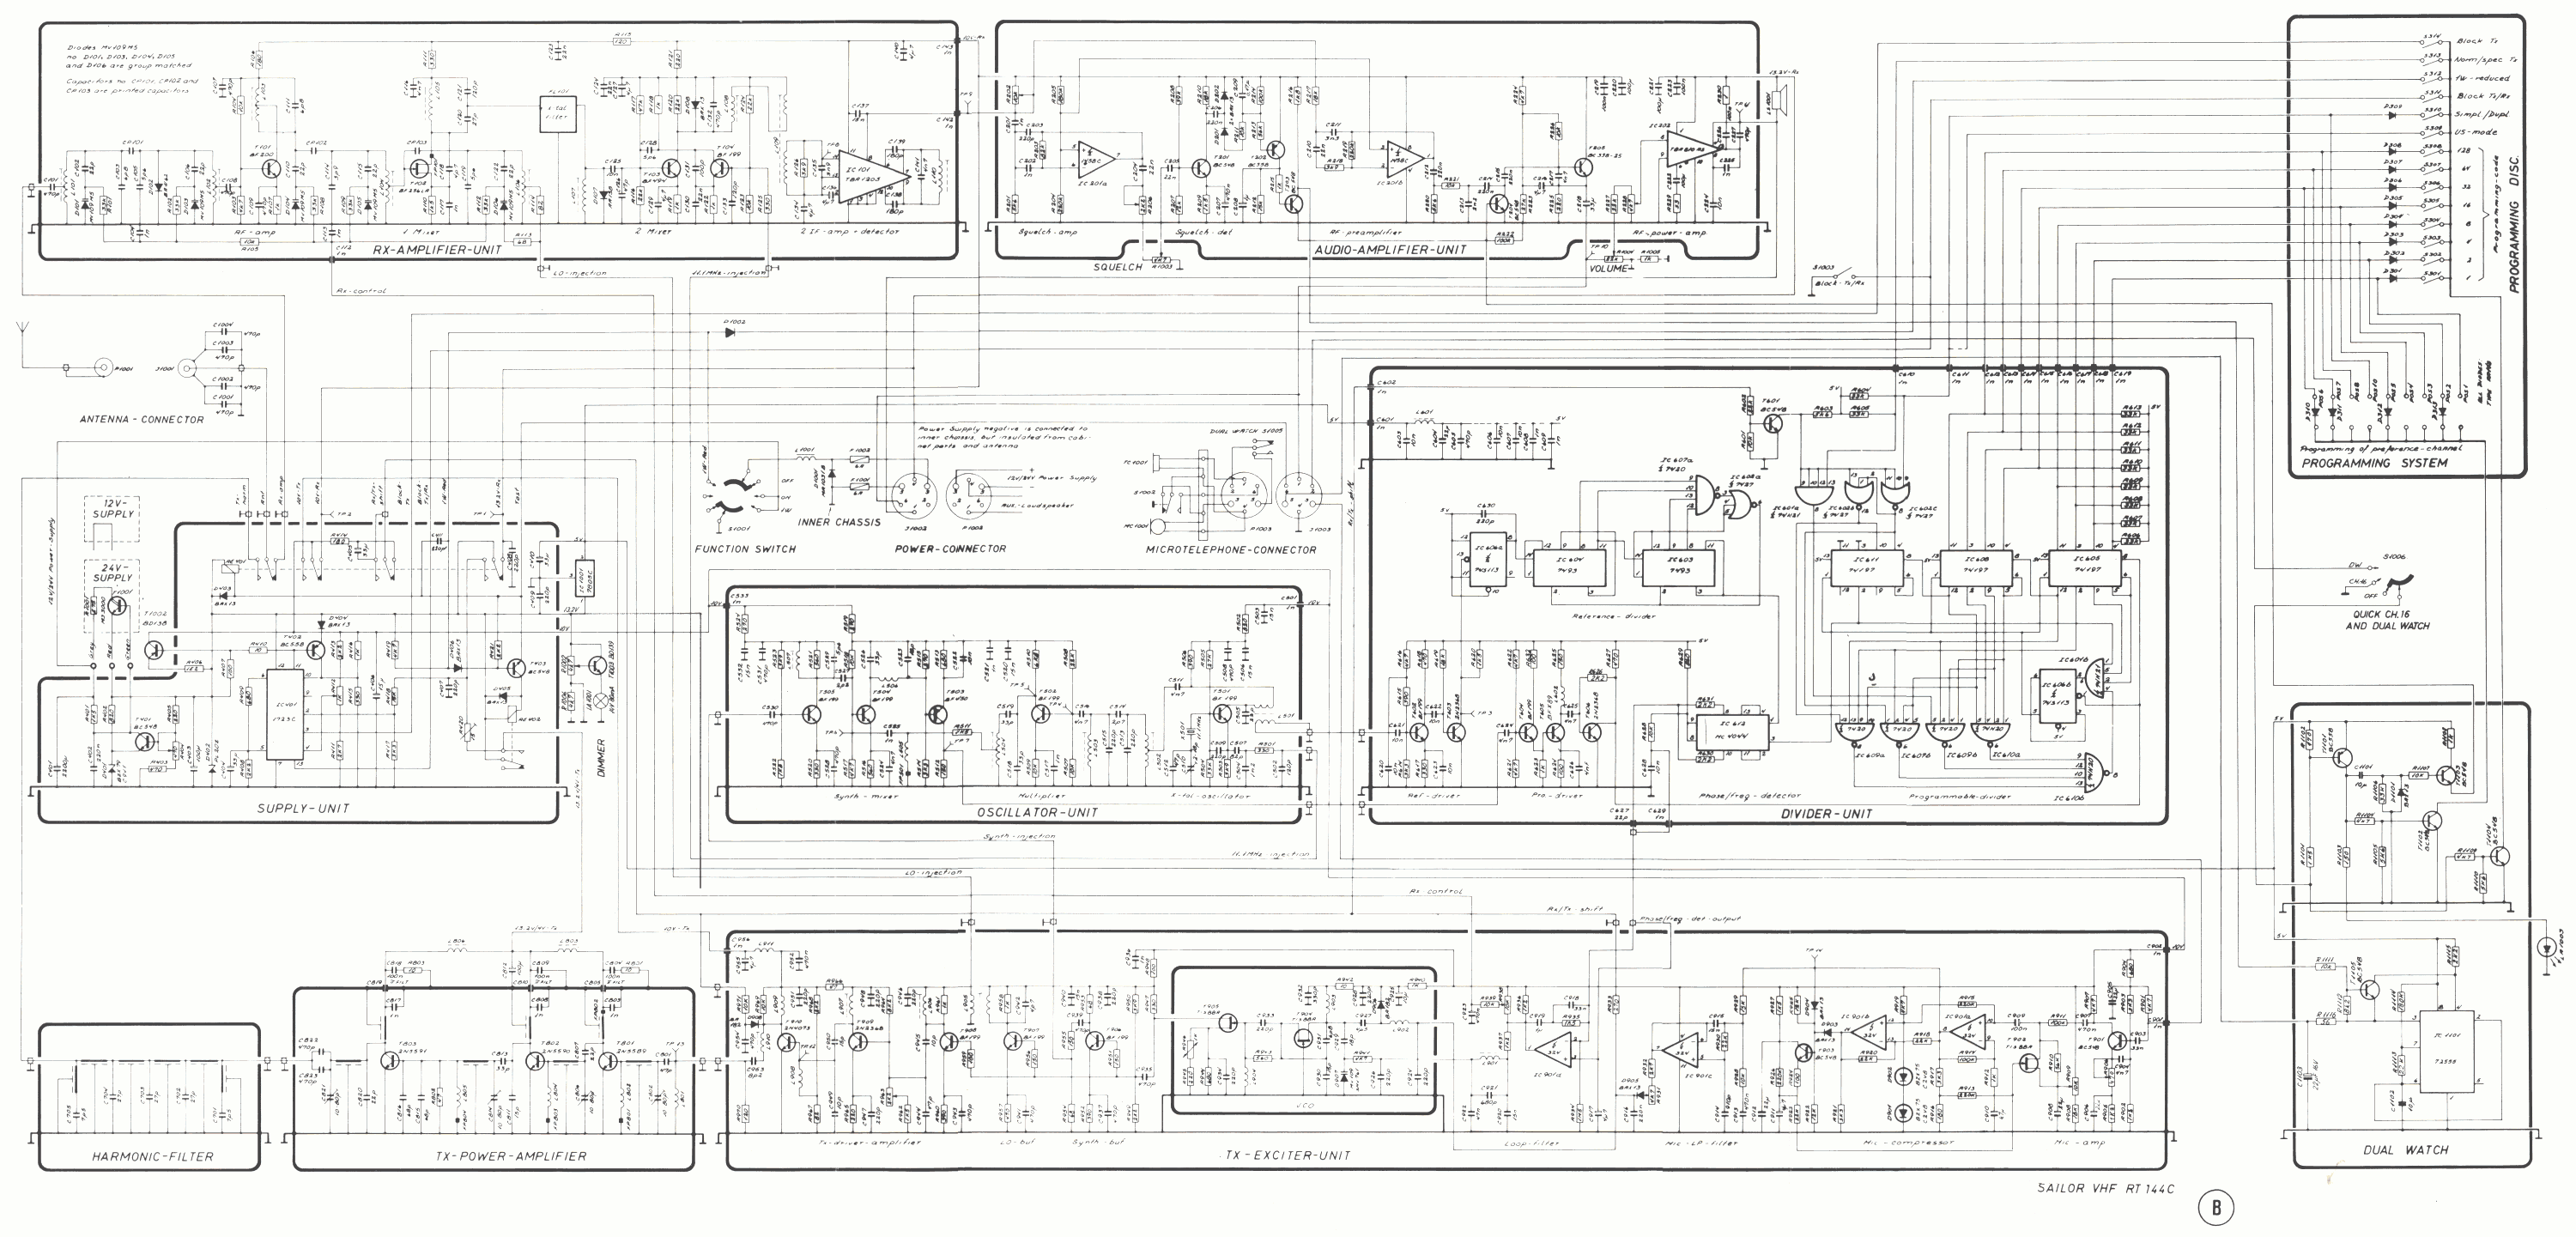 RT-144C schema